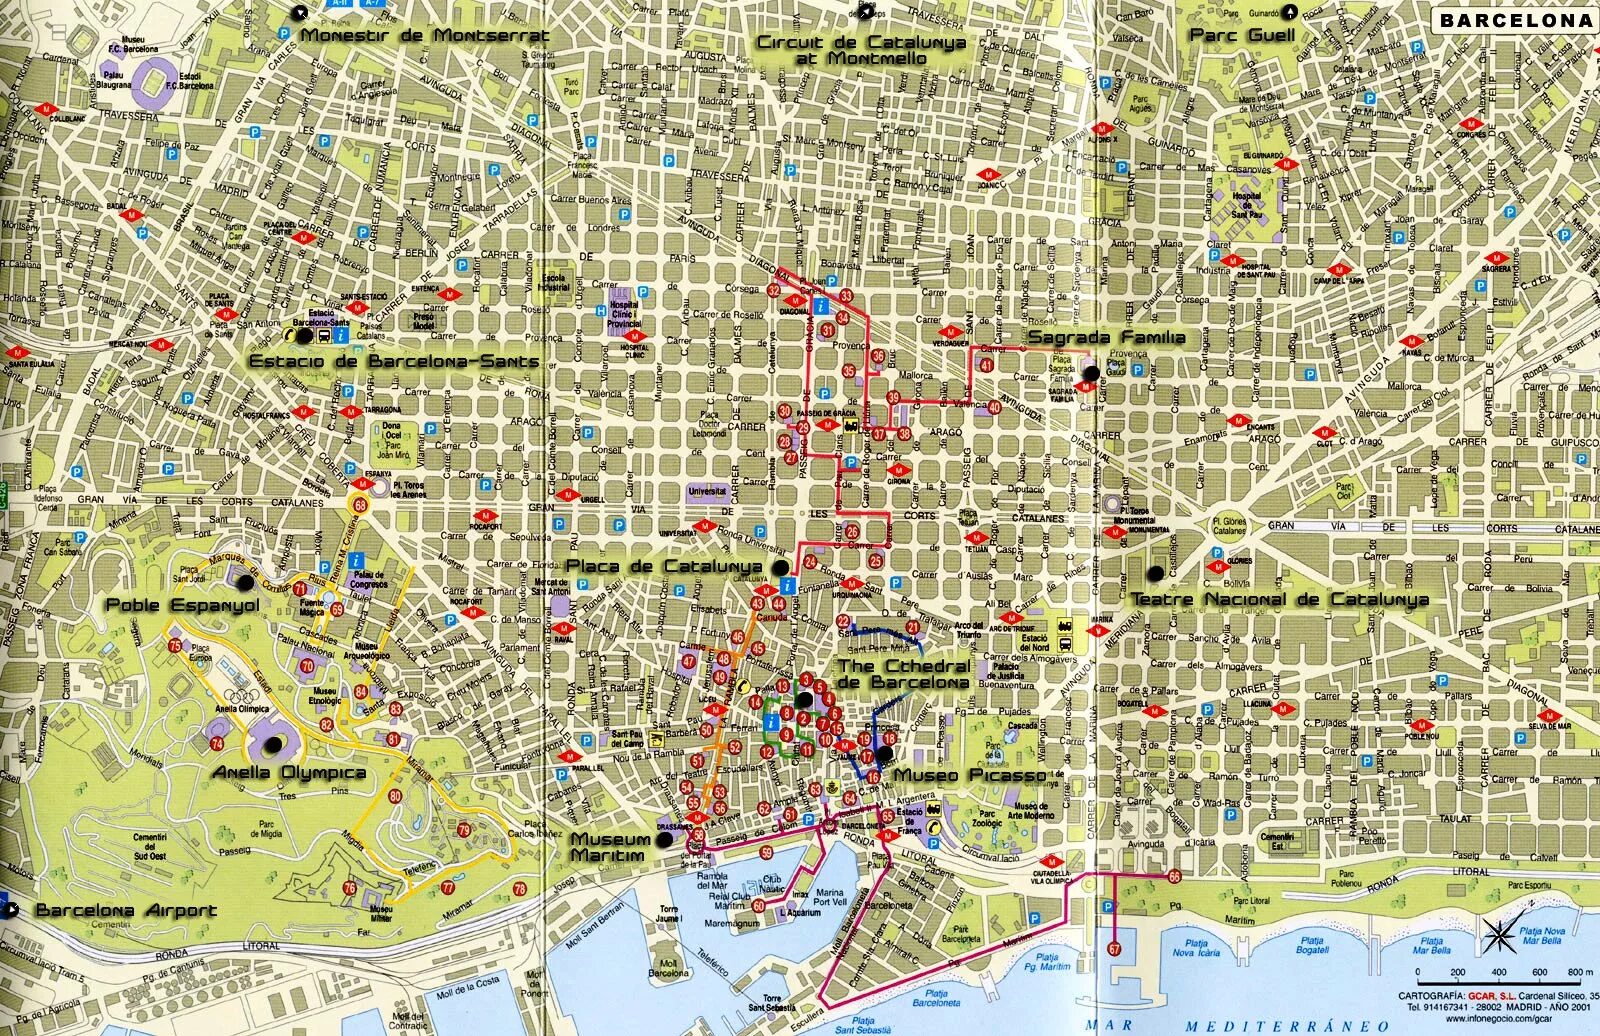 Увидеть карту города. Карта центра Барселоны с достопримечательностями. Карта города Барселона русском языке. Окрестности Барселоны карта. Барселона центр города на карте.